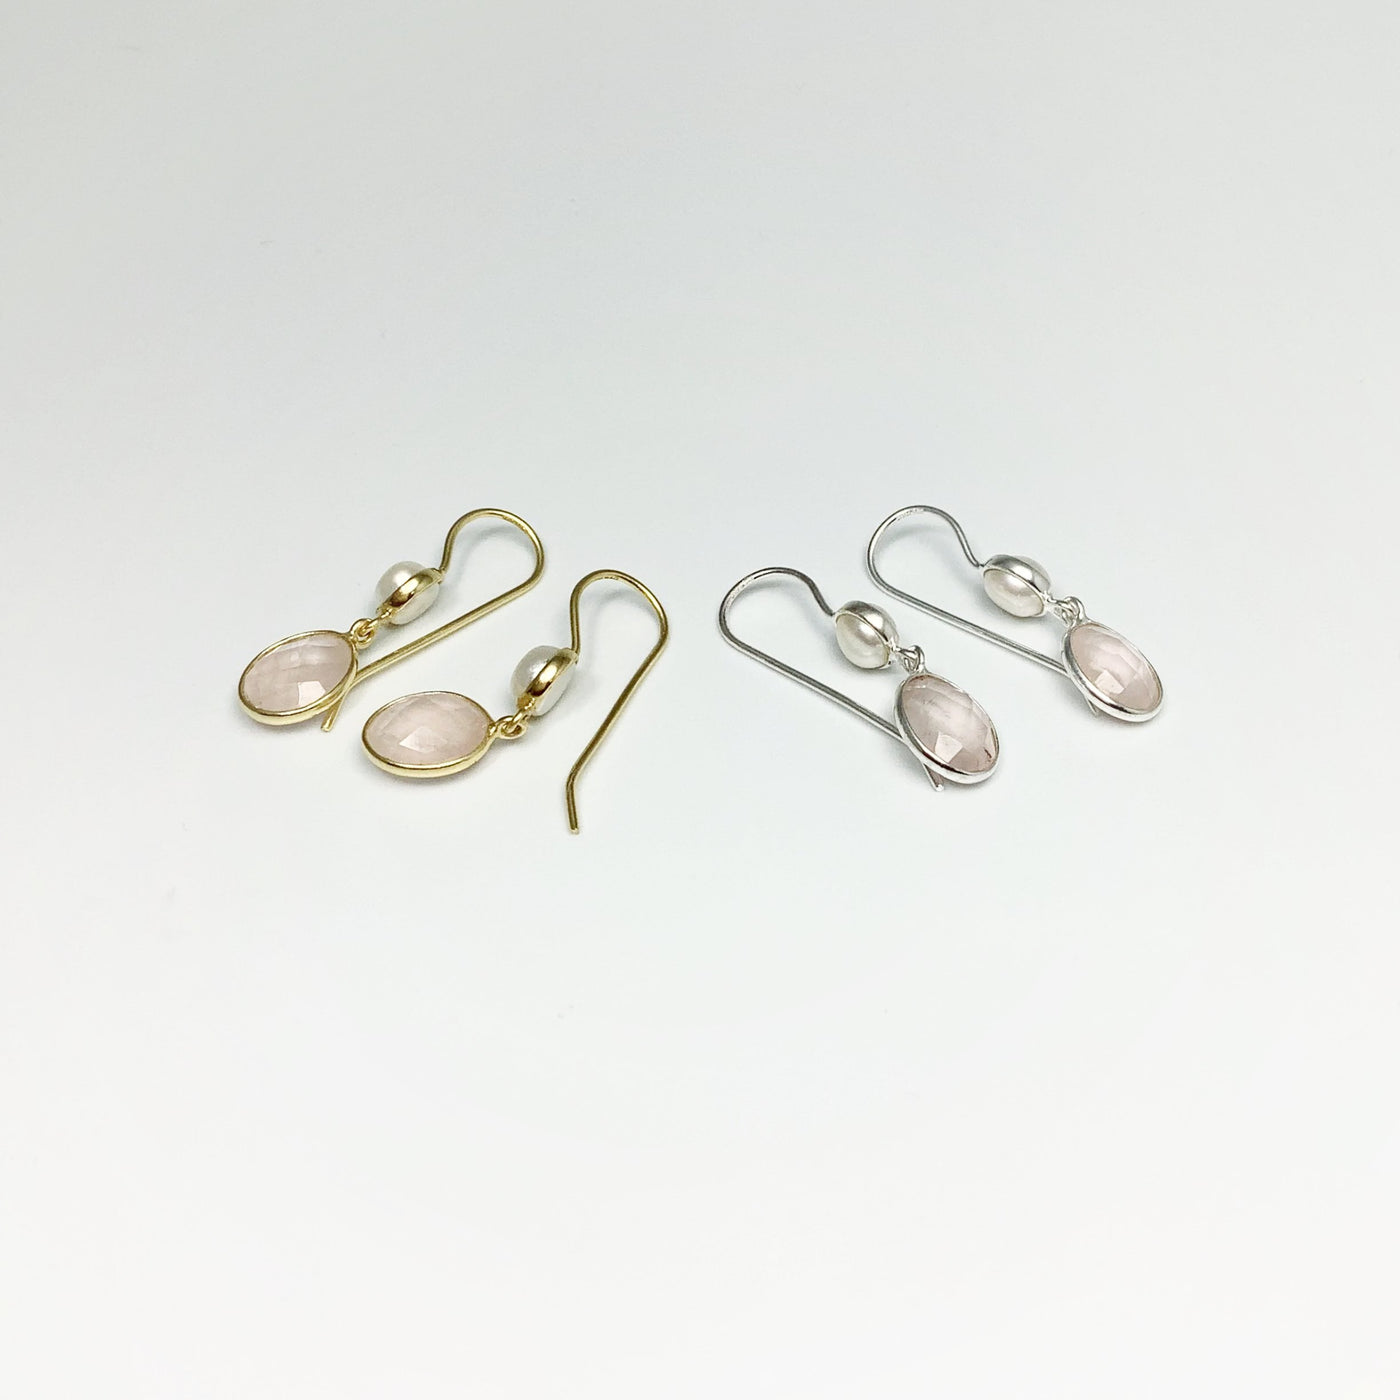 Rose Quartz and Pearl Dangle Earrings